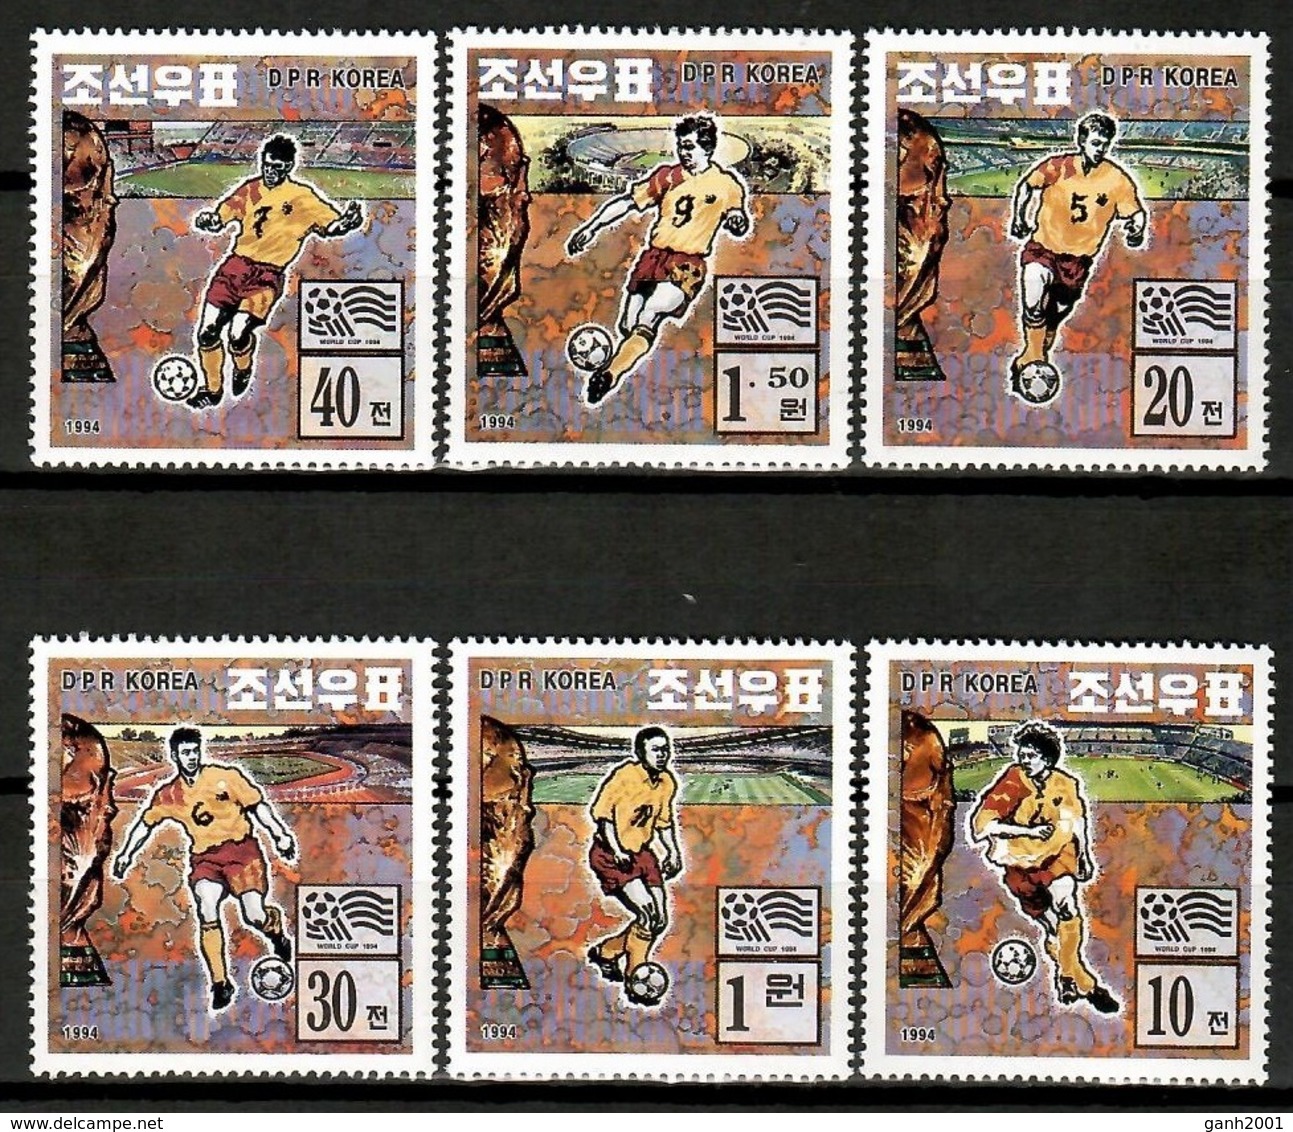 Korea 1994 Corea / Football Soccer World Cup Los Angeles MNH Futbol / Cu12719  36-35 - 1994 – Estados Unidos